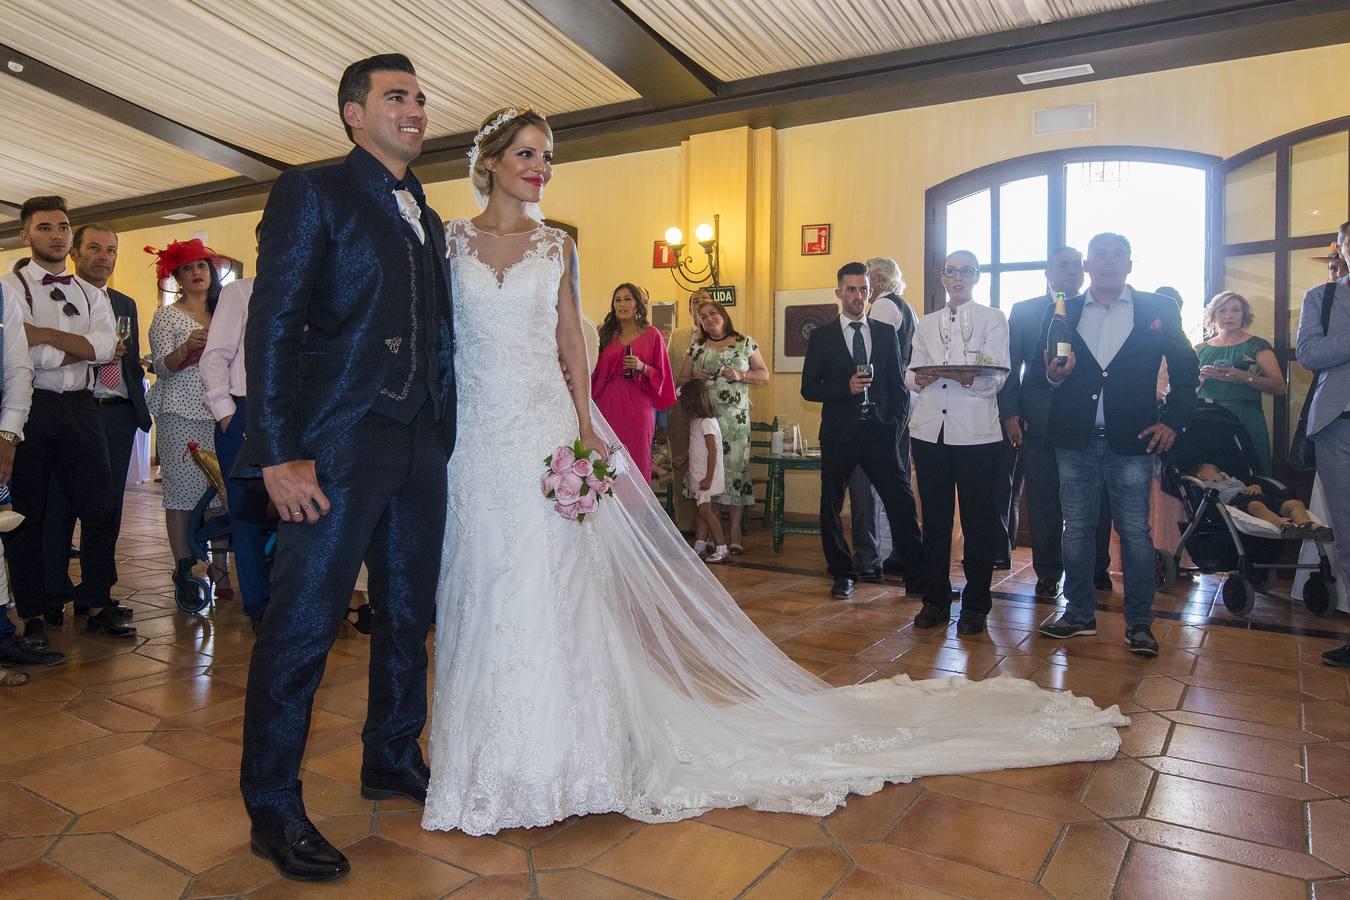 El futbolista José Antonio Reyes contrajo matrimonio con su novia Noelia Reyes en Utrera